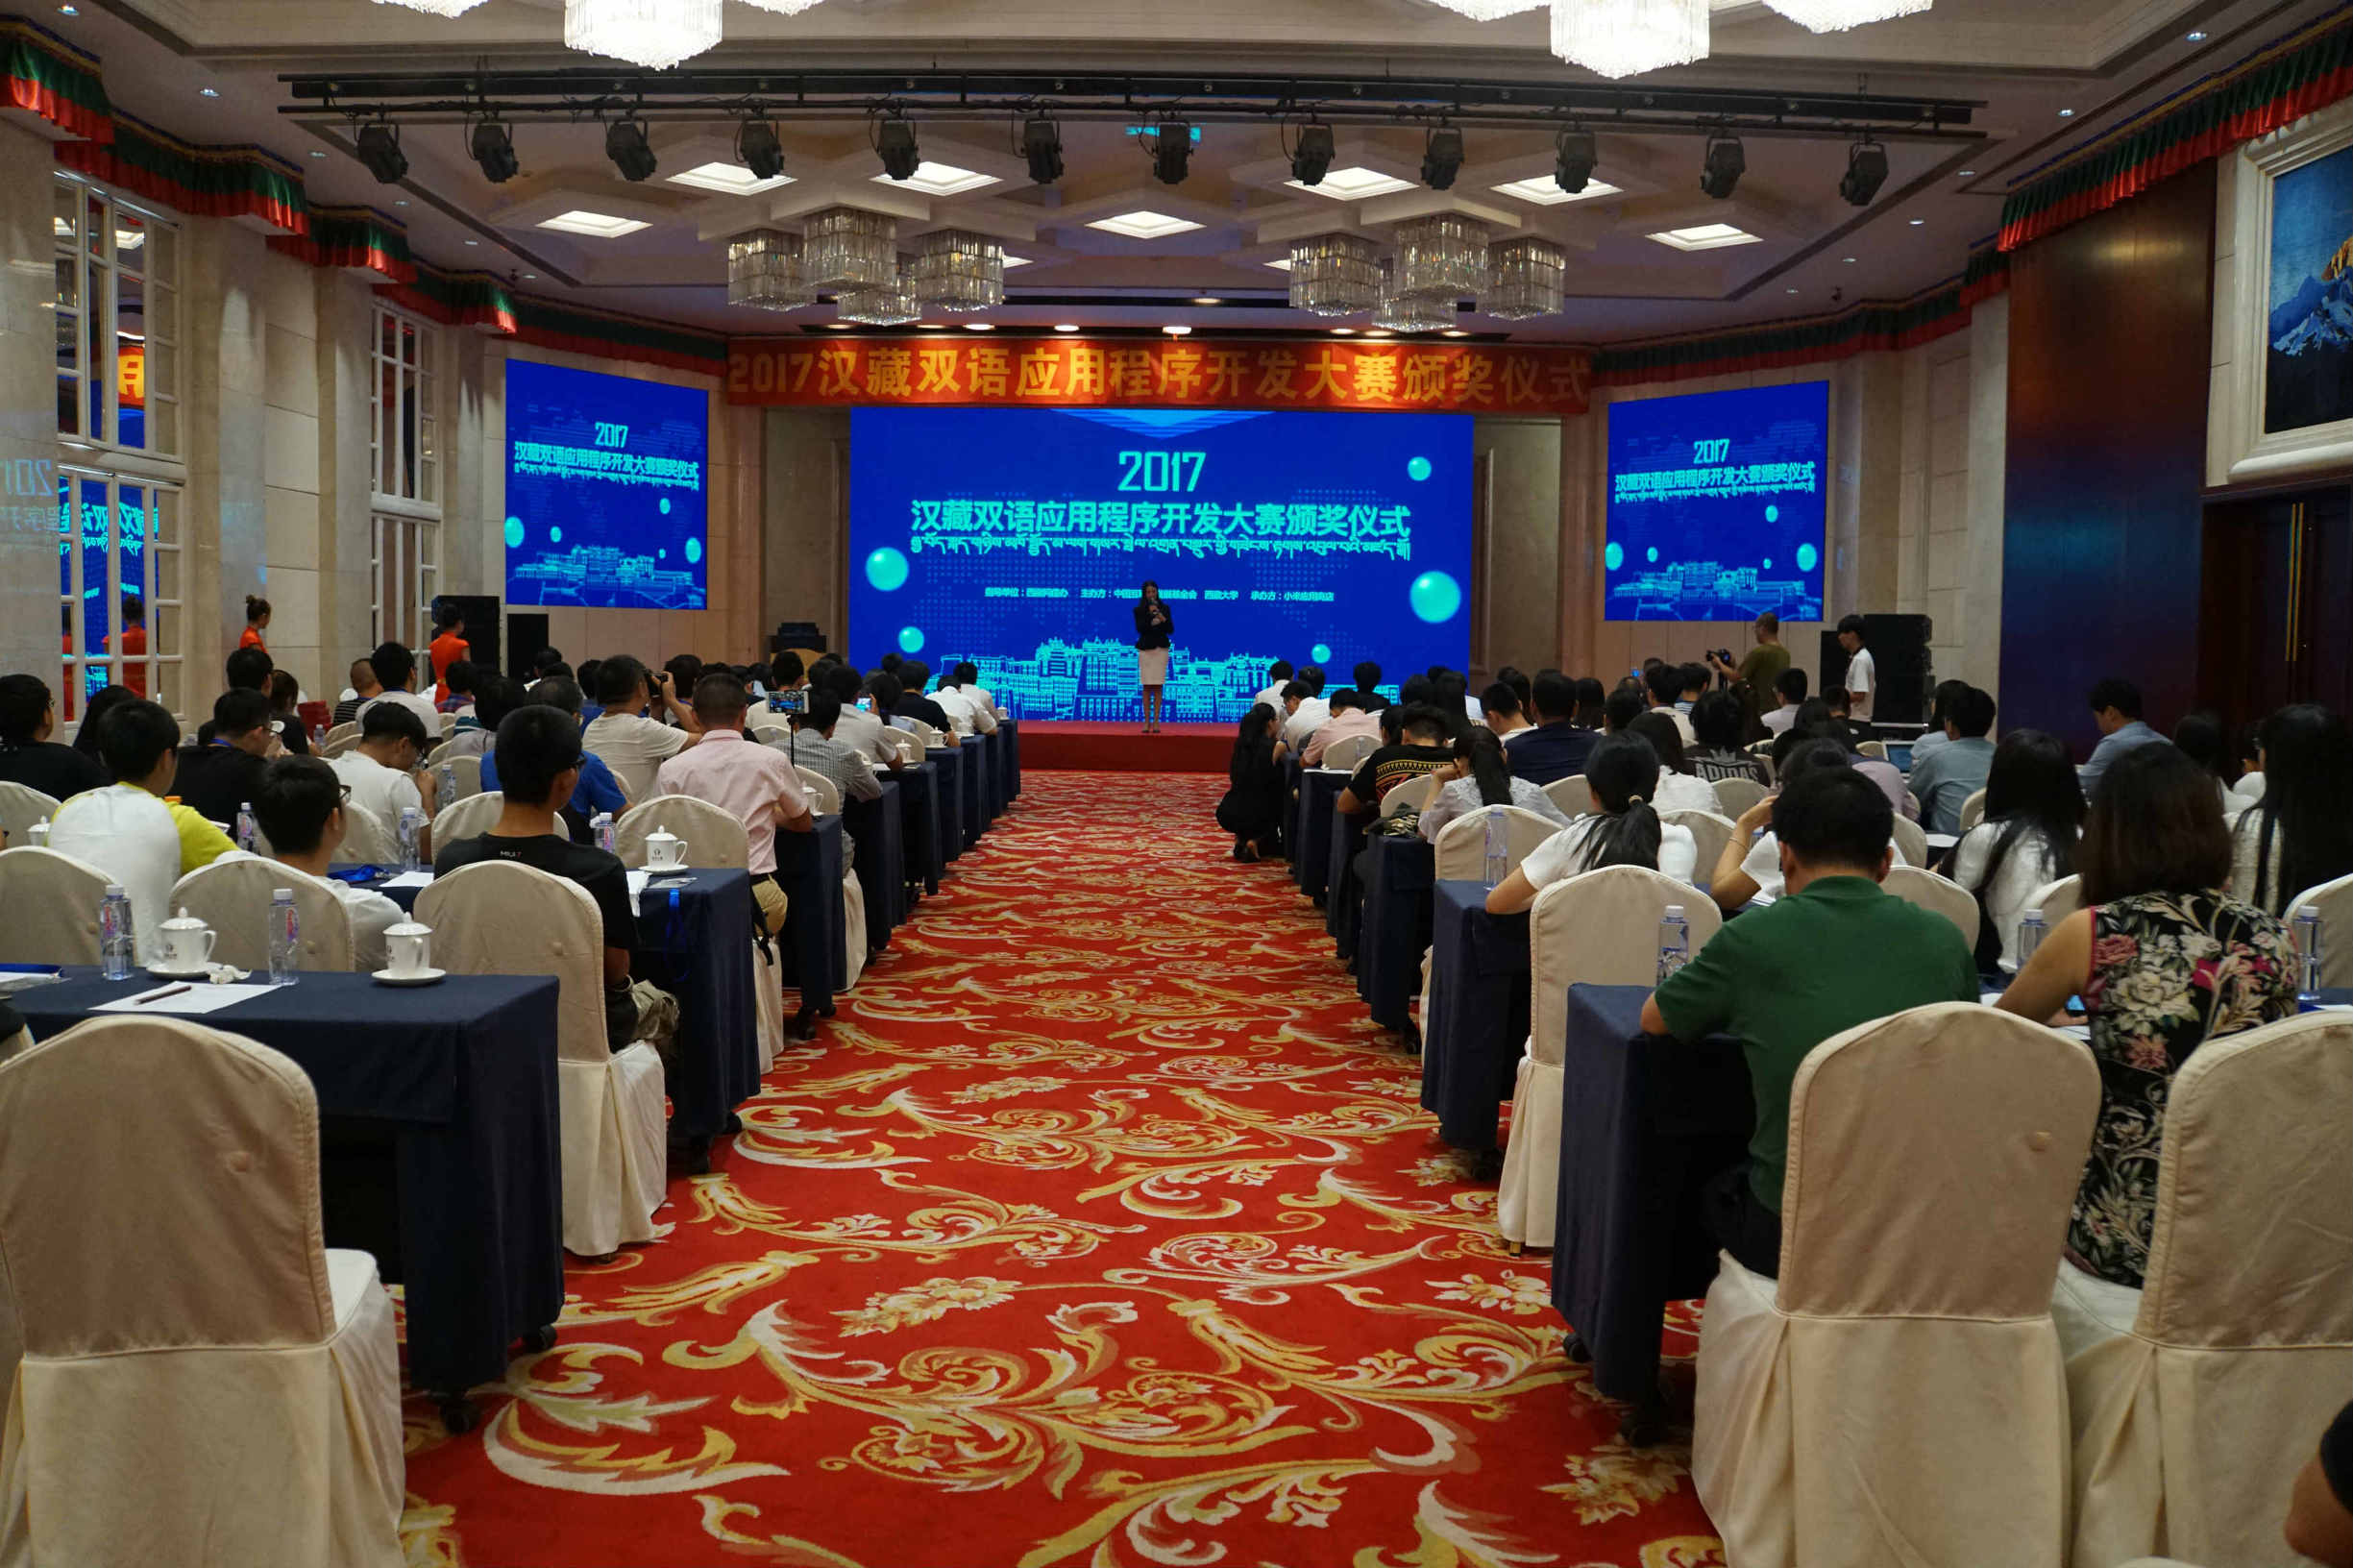 2017年汉藏双语应用程序开发大赛颁奖仪式在京举行 “哎玛虎翻译”“美隆”获一等奖